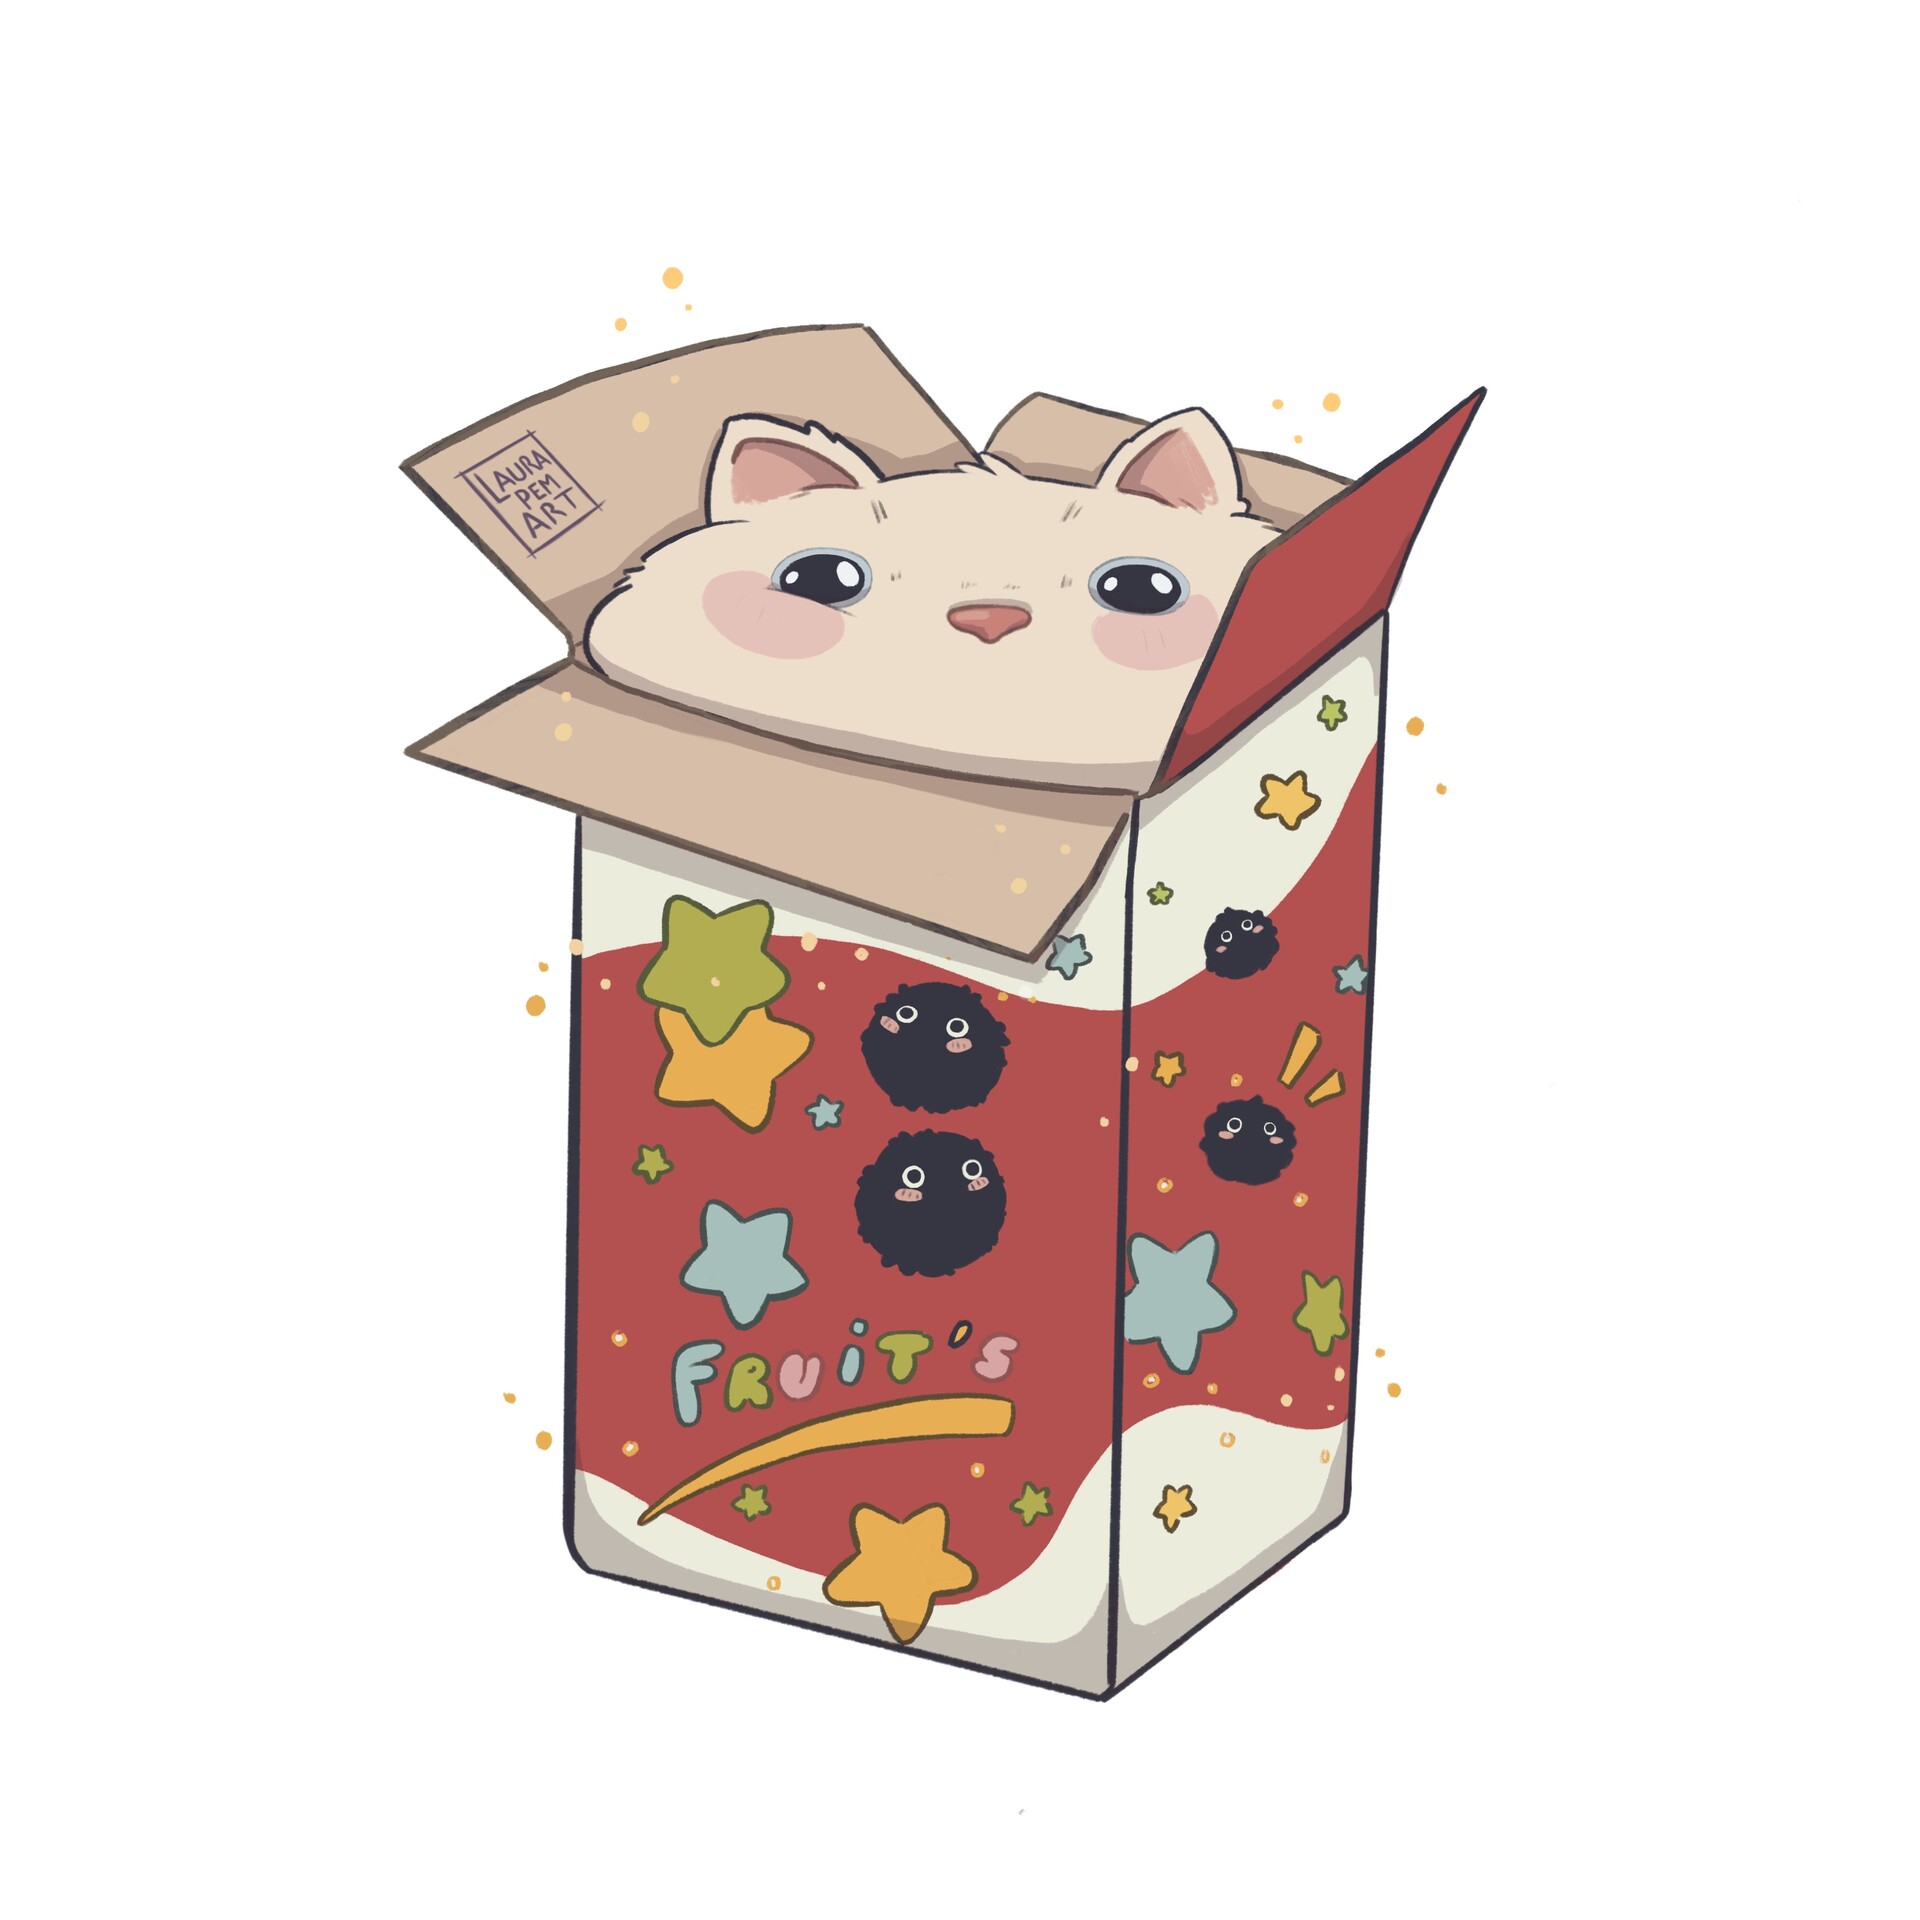 ArtStation - Cookie cat